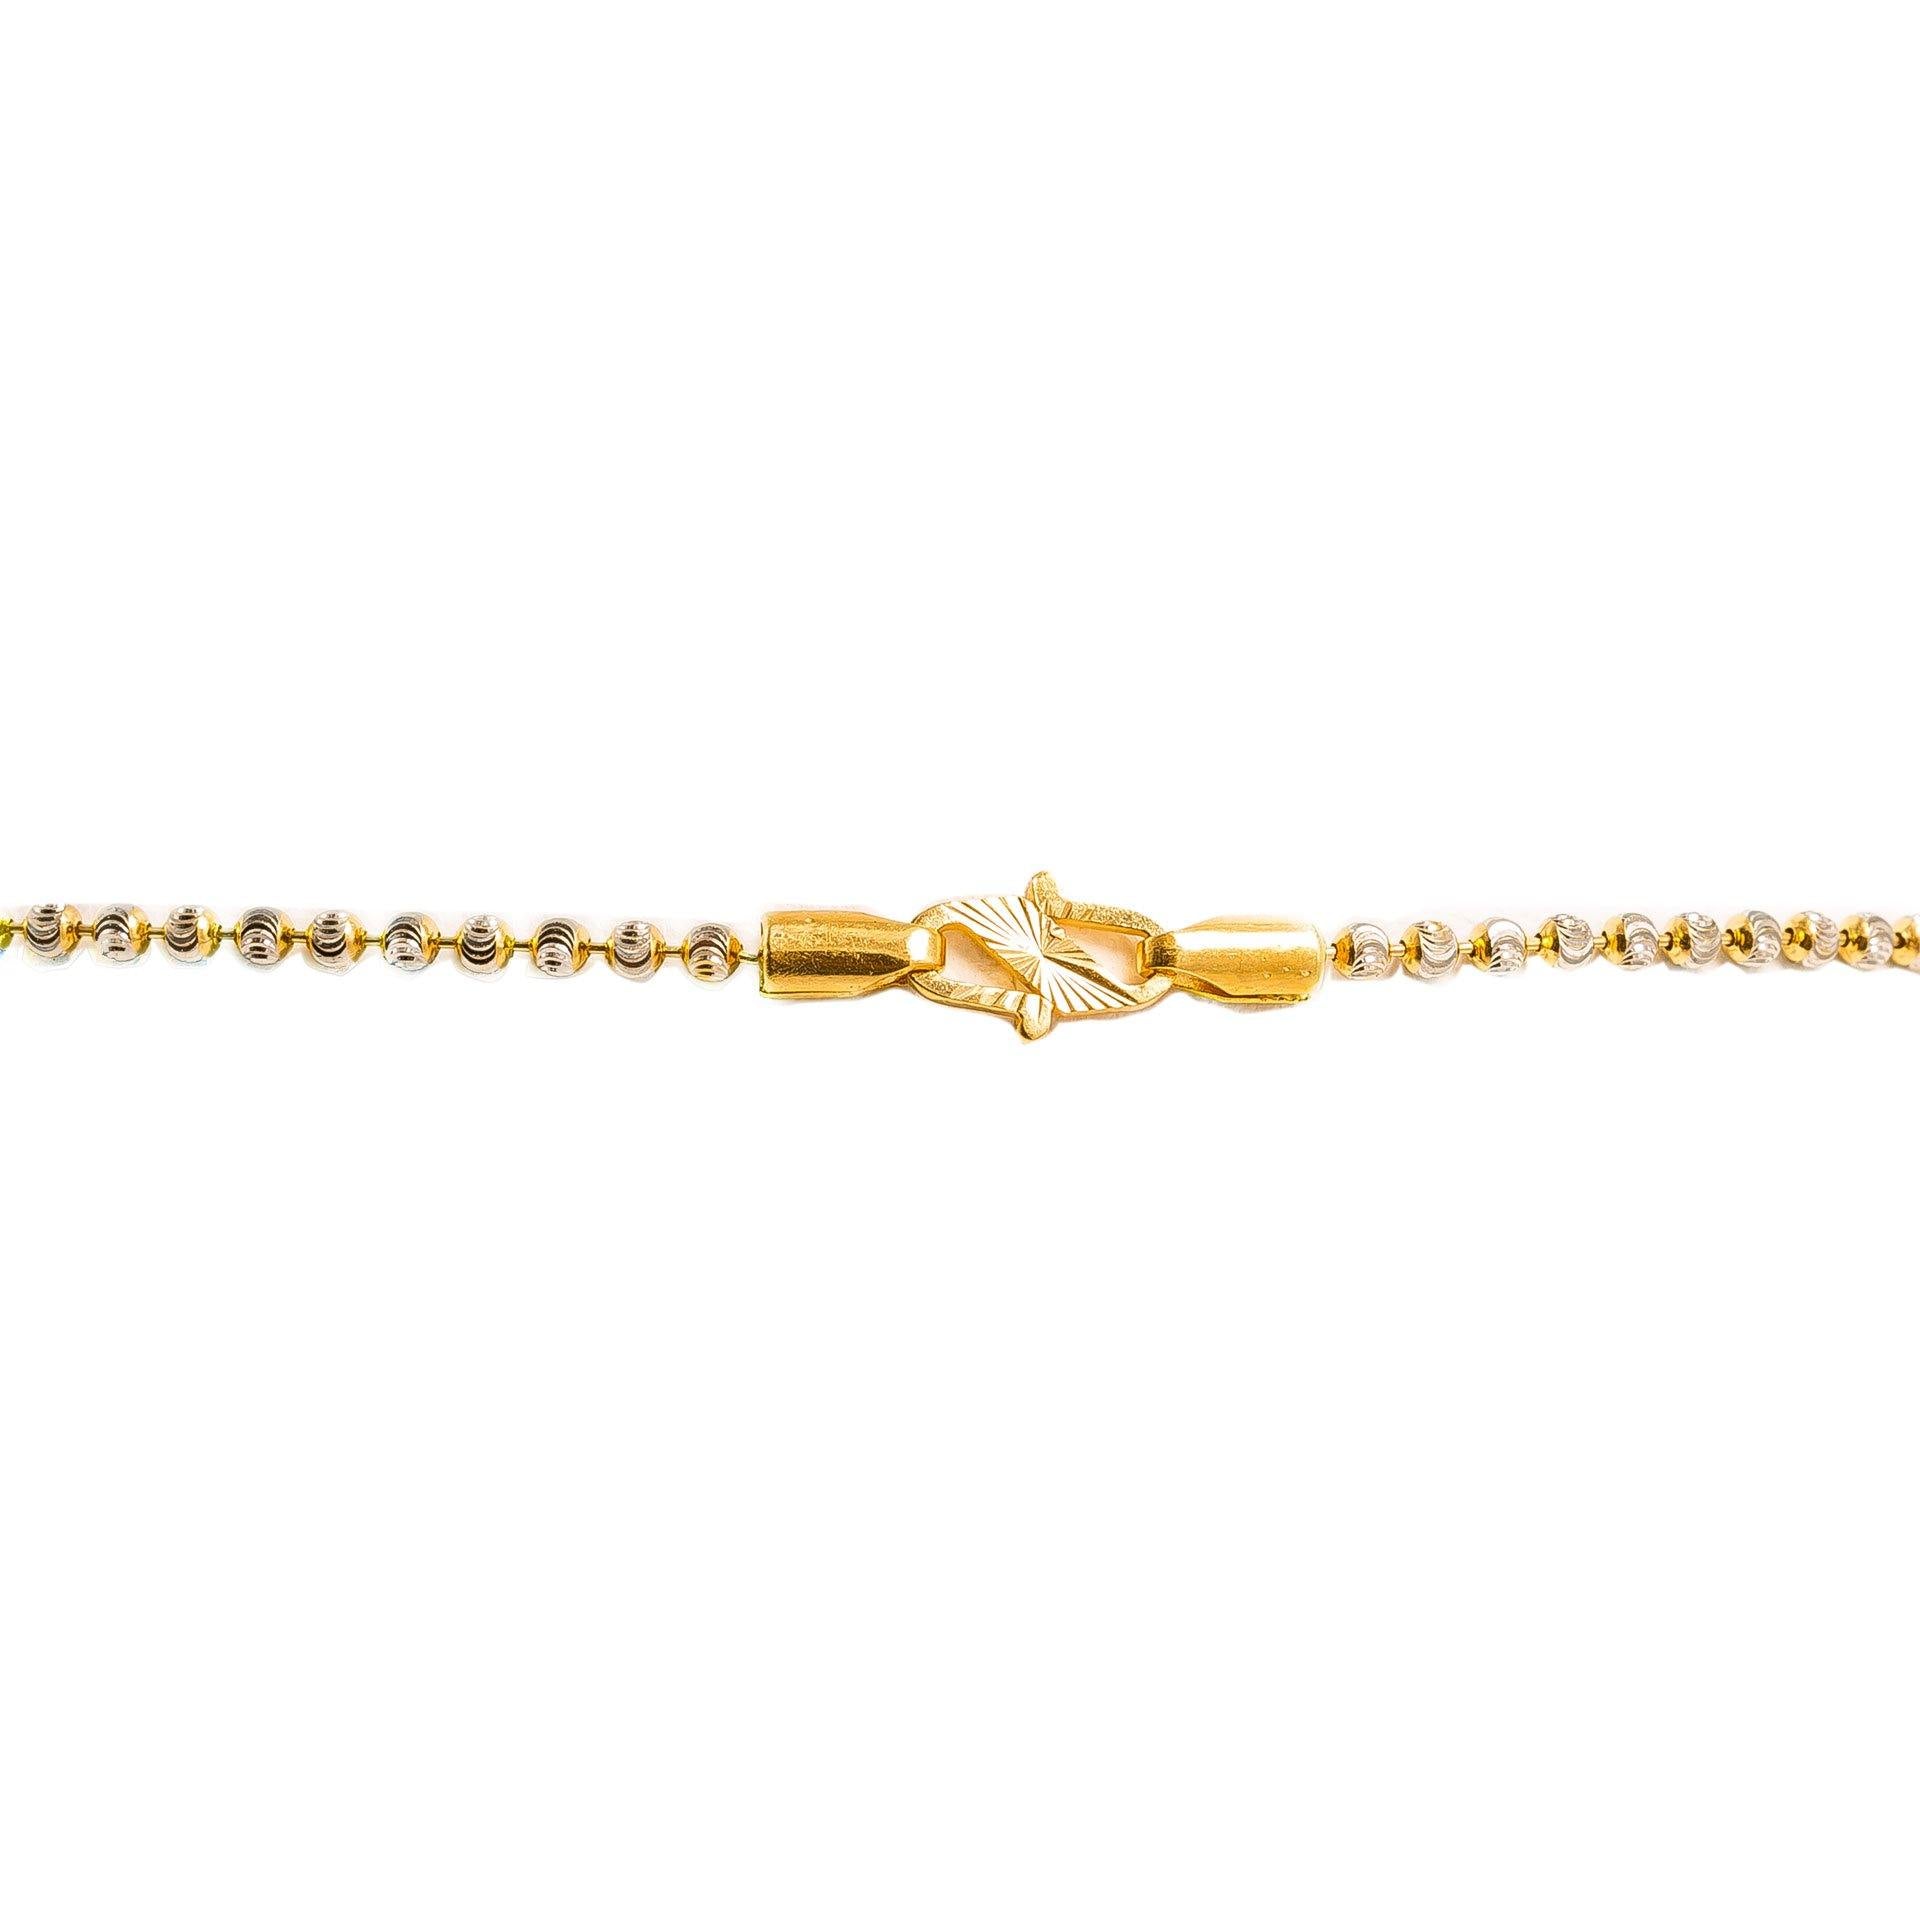 22K Yellow Gold Beaded Chain (9gm)